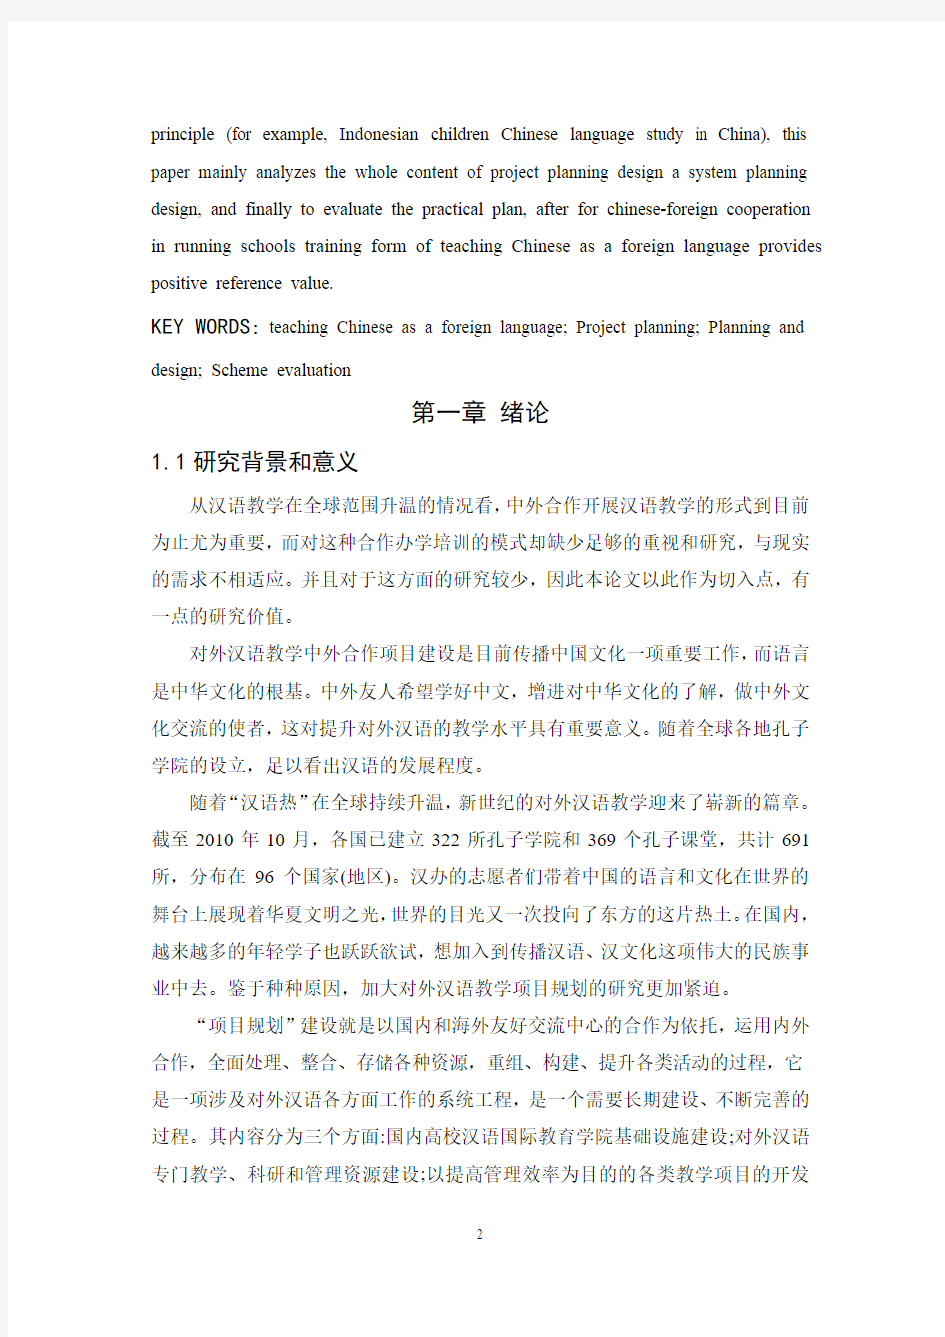 3刘丹丹 林琼敏 对外汉语教学项目规划研究——以印尼儿童来华学习汉语班为例2